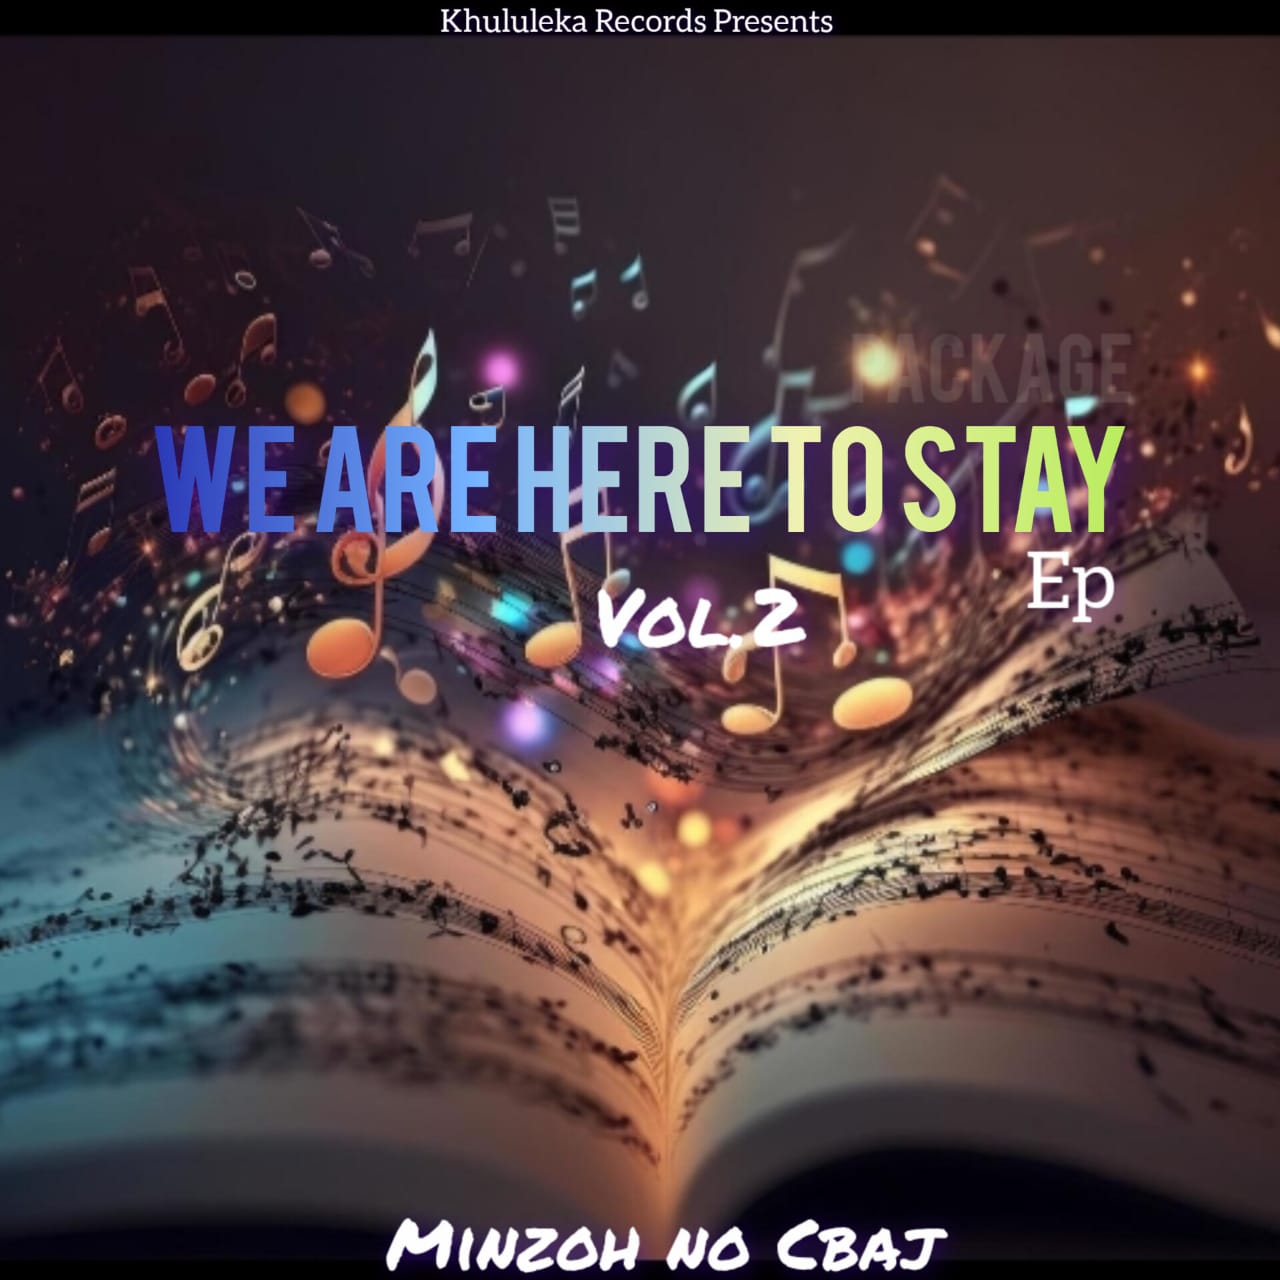 We Are Here To Stay EP Vol.2 - Minzoh No Cbaj